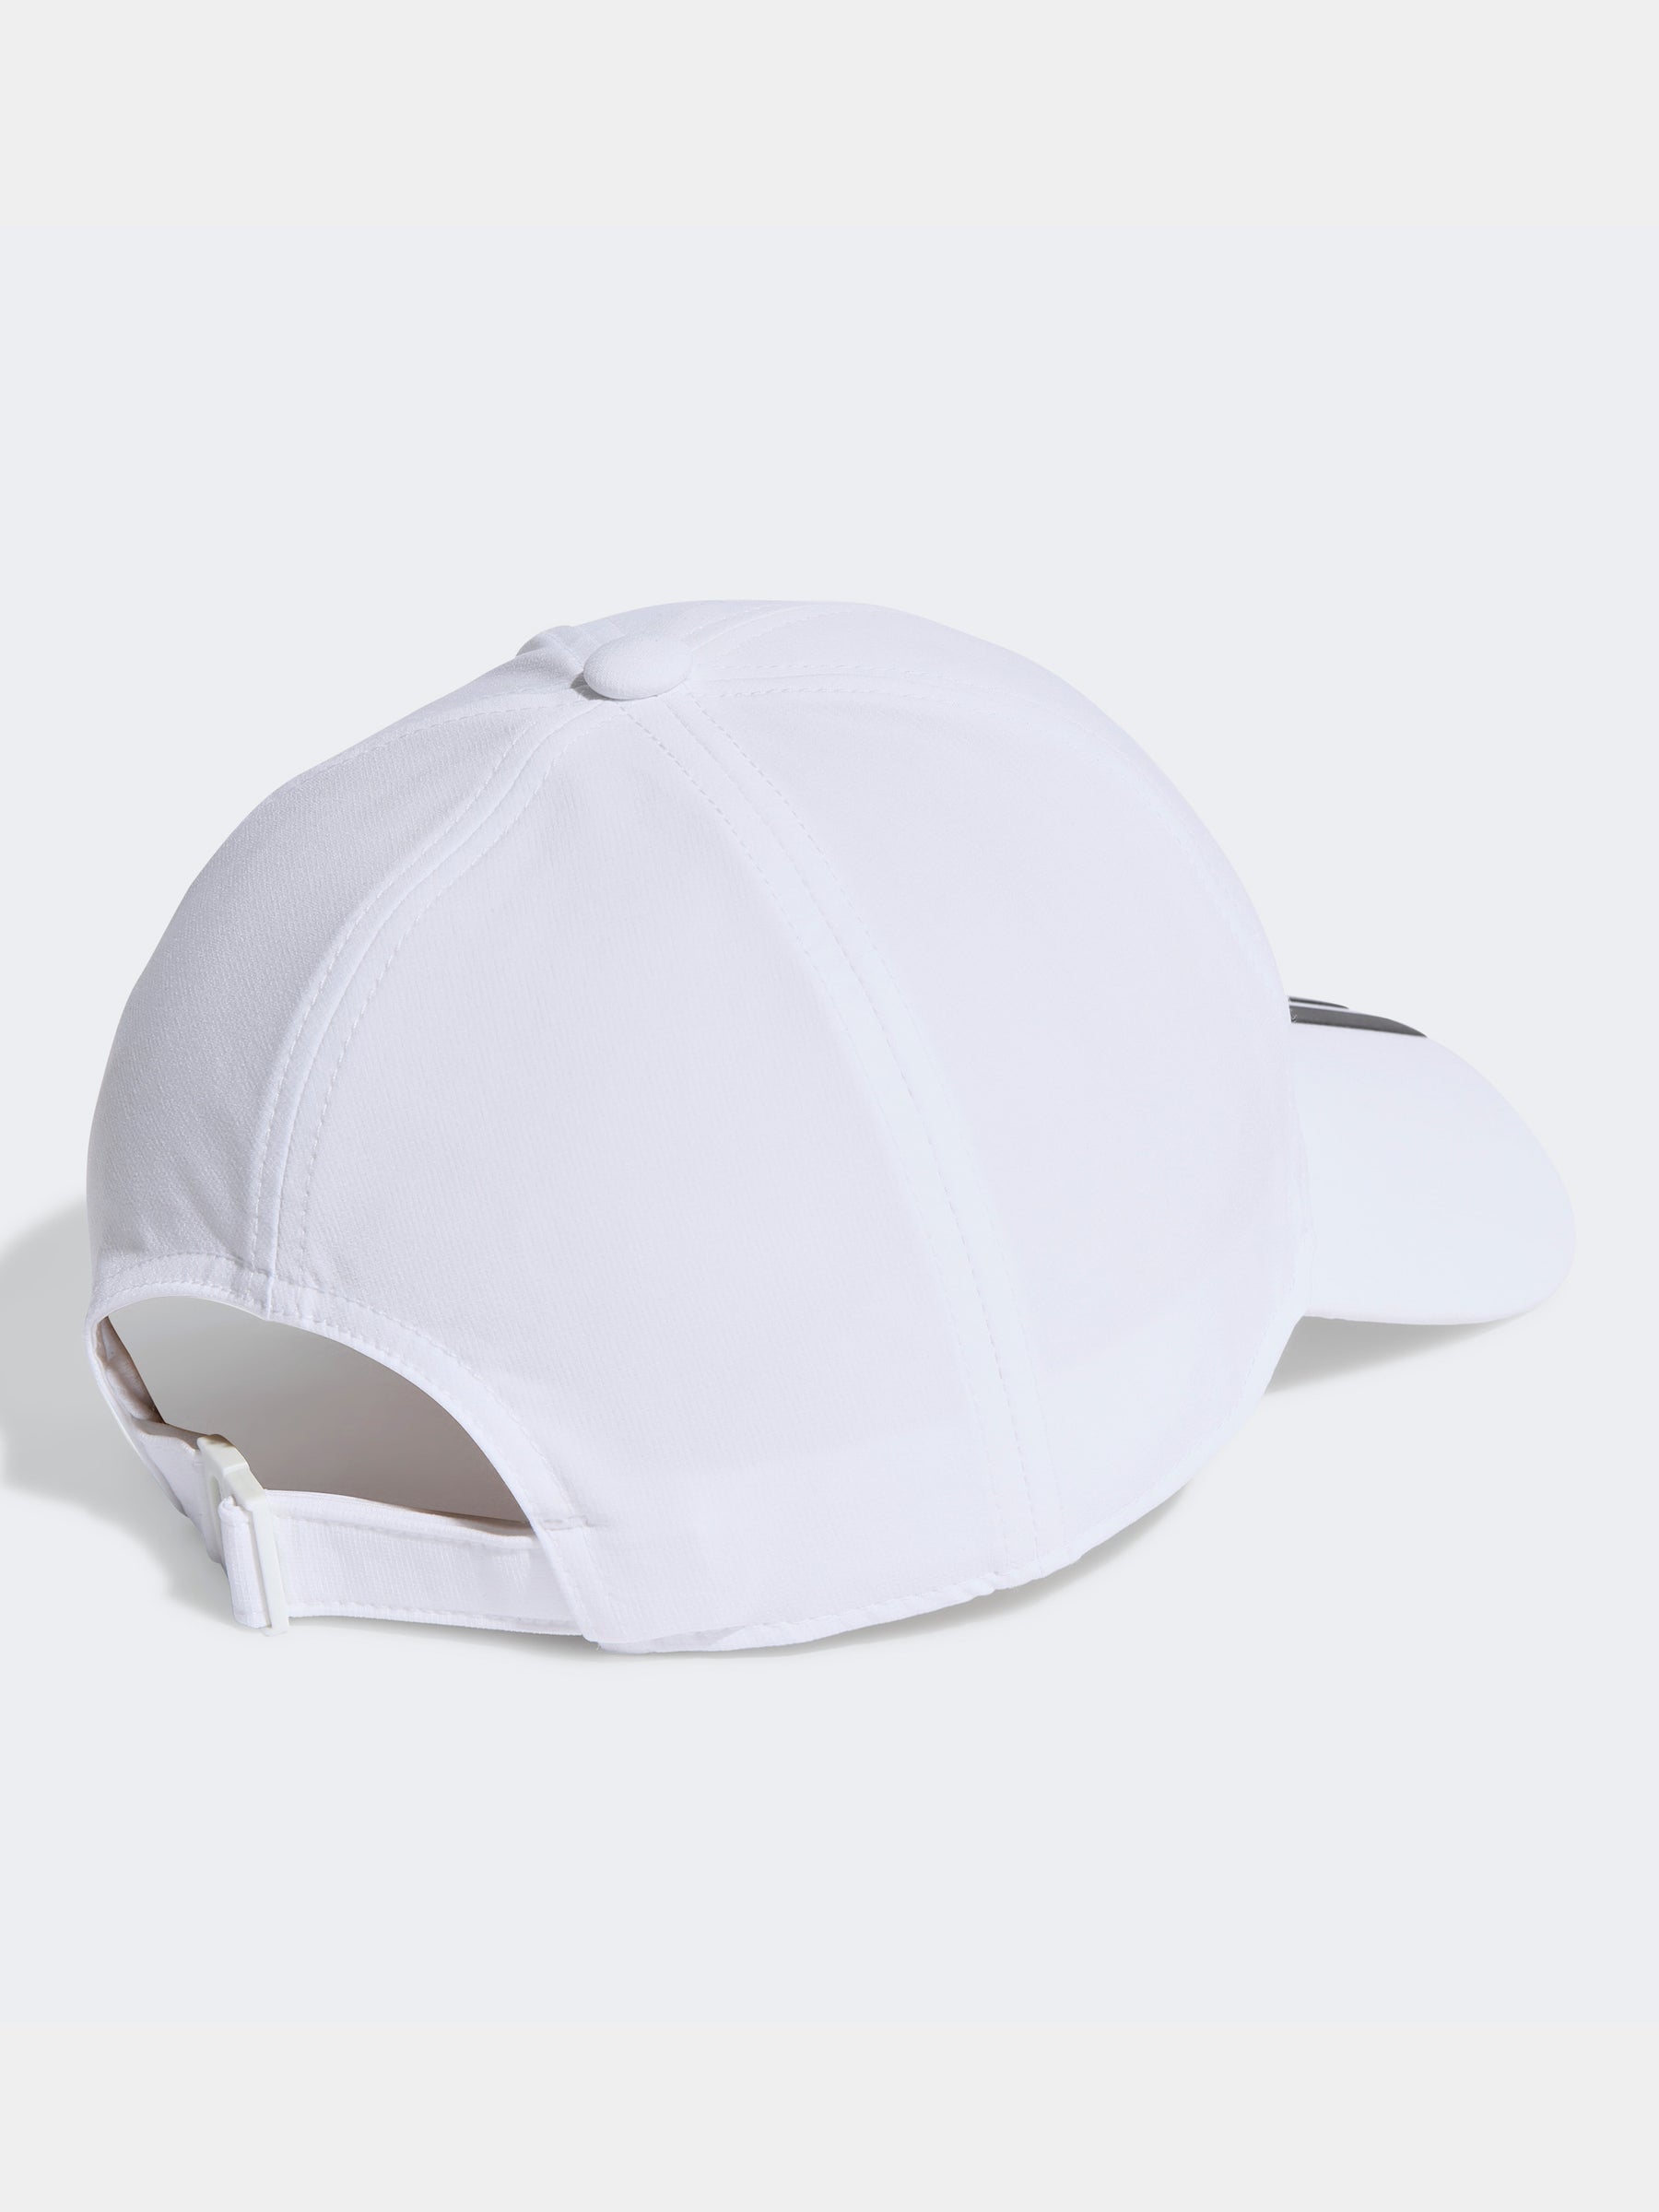 כובע מצחייה בשילוב לוגו / יוניסקס- adidas performance|אדידס פרפורמנס